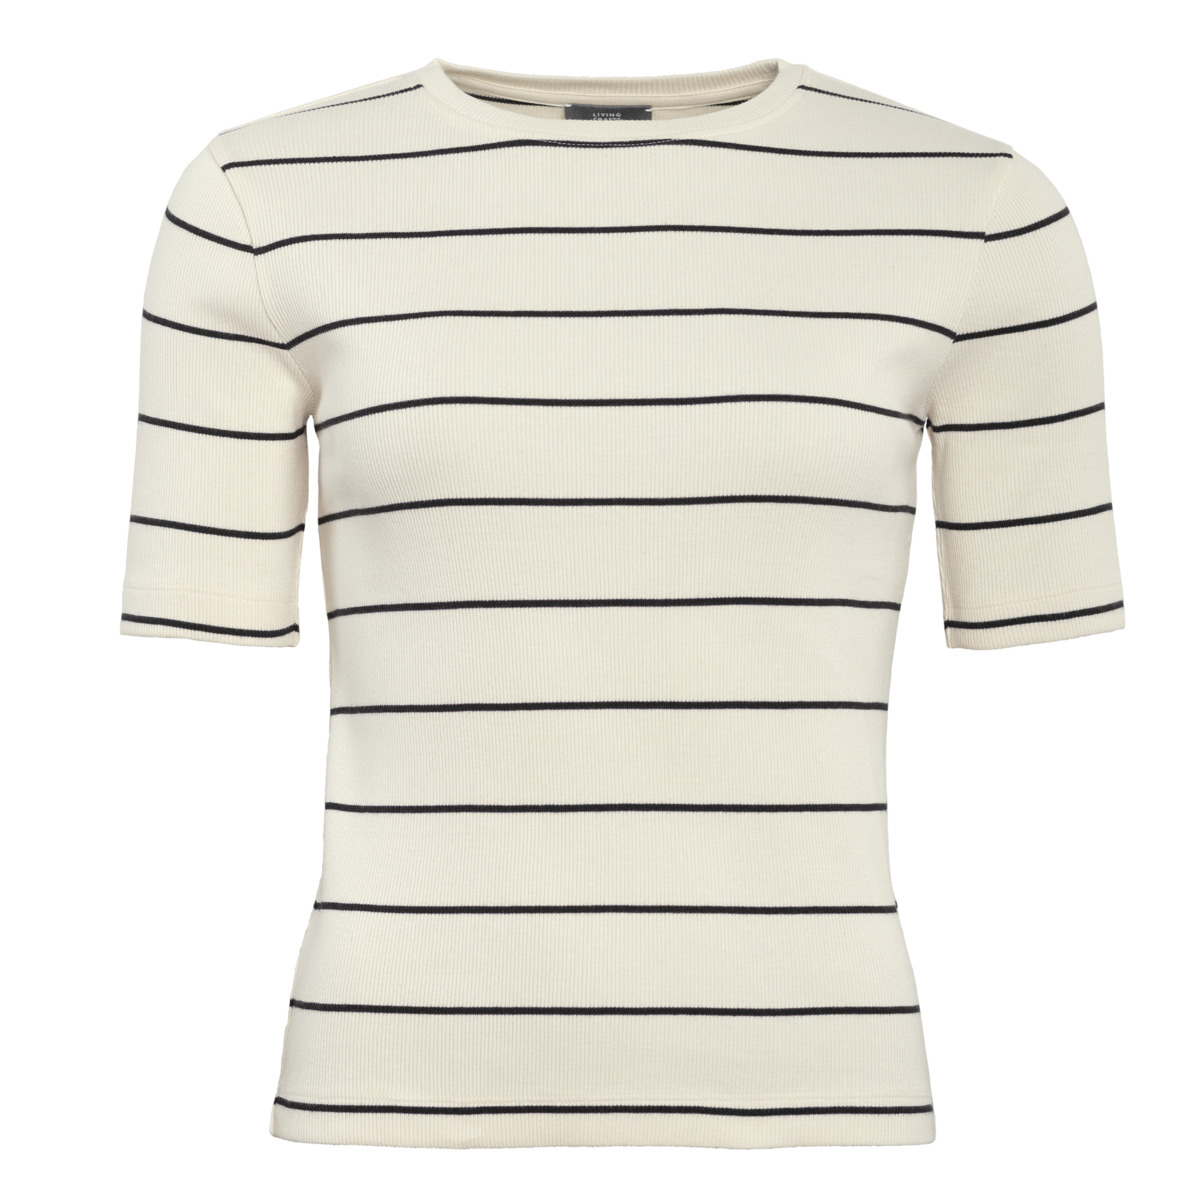 Striped T-shirt, RIA